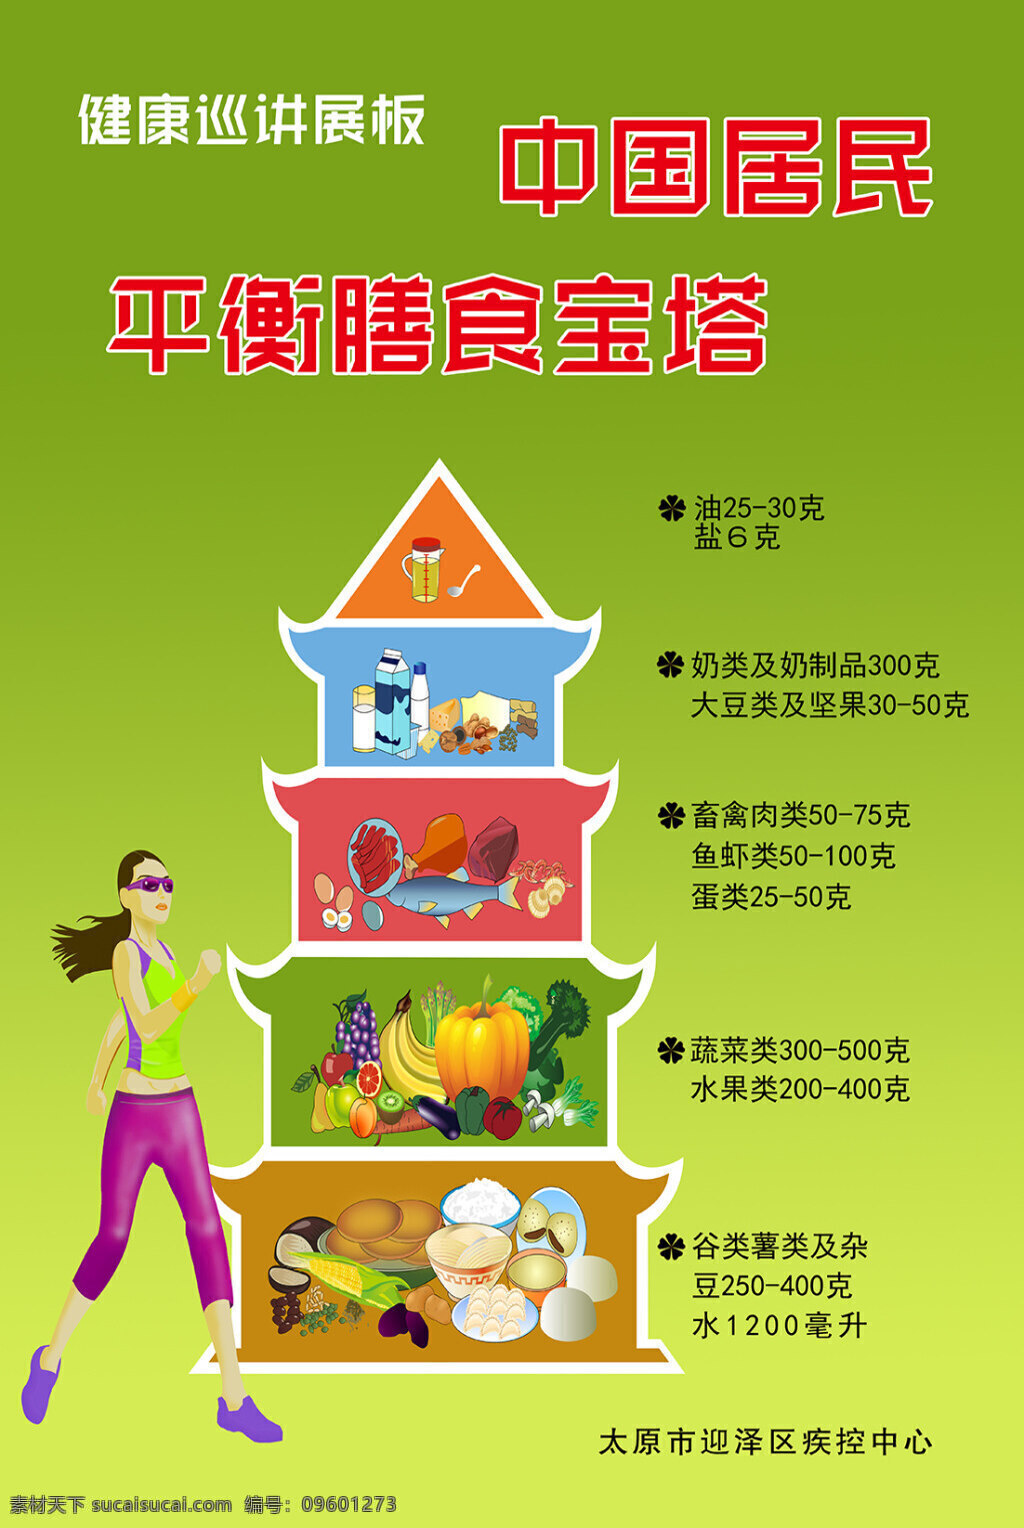 中国 居民 平衡 膳食 宝塔 展板 海报 喷绘 广告 健康巡讲展板 平衡膳食宝塔